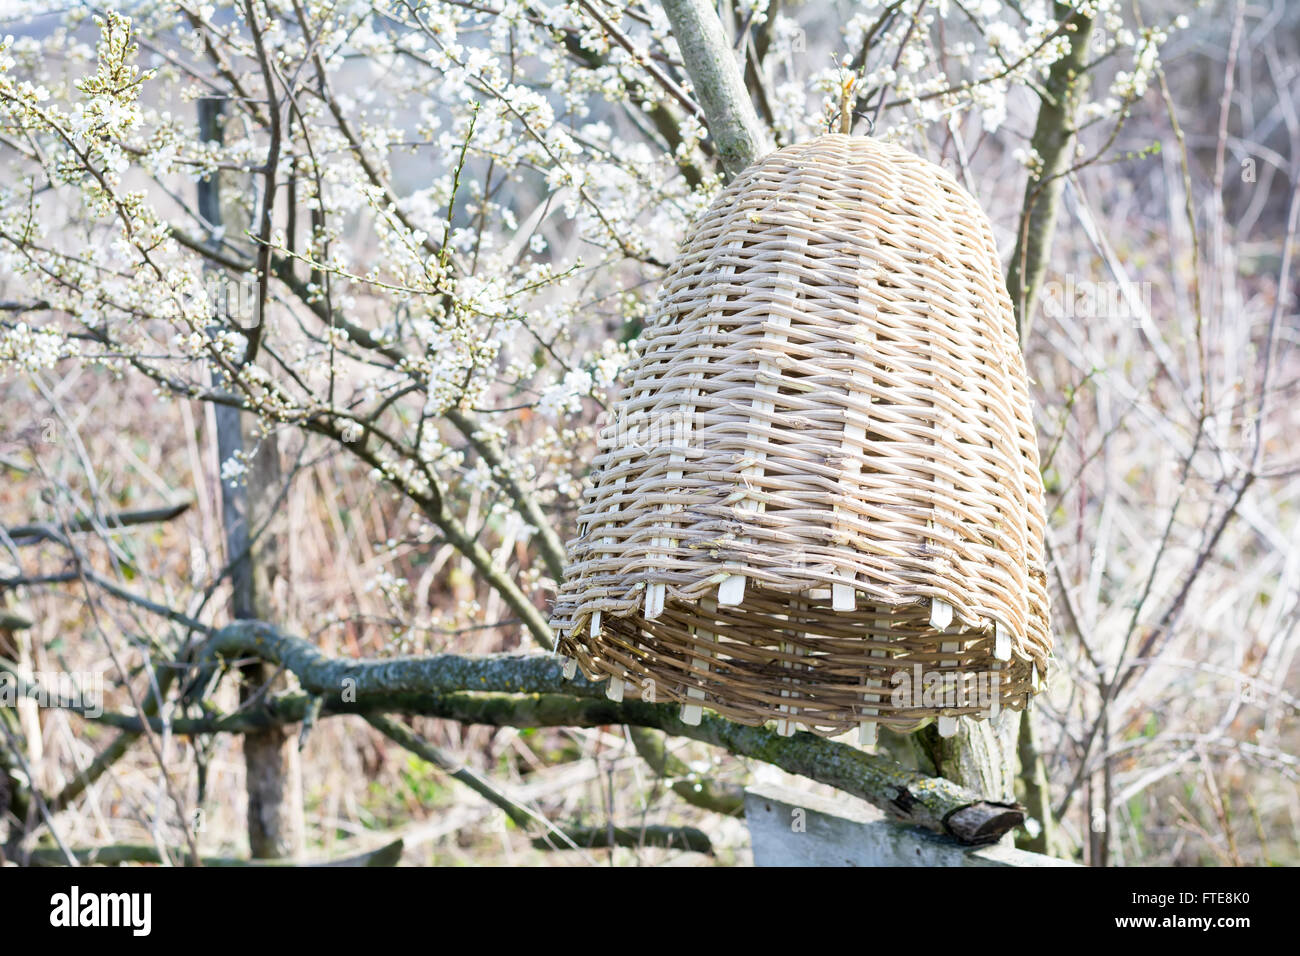 Artigianale di alveare per cattura di sciami di api in natura Foto Stock